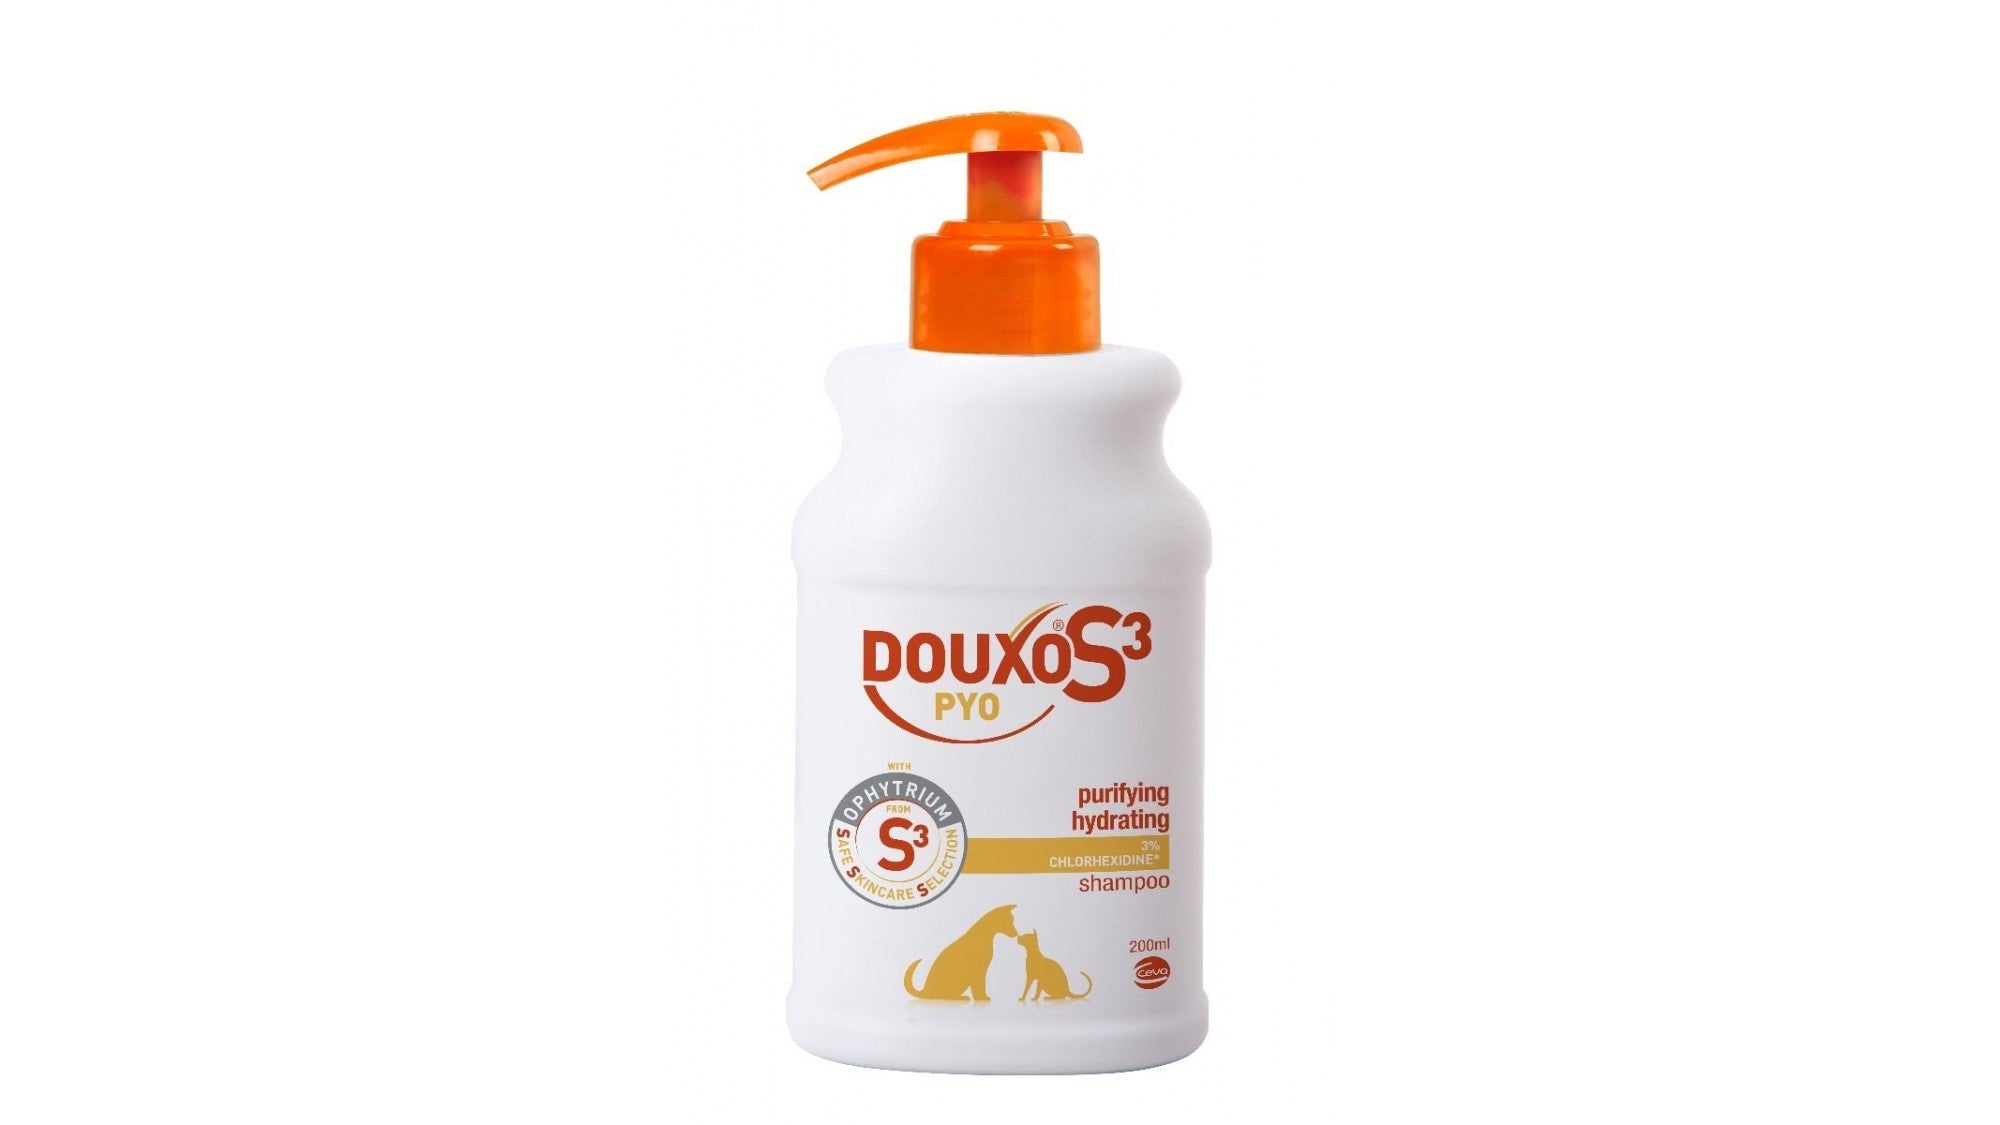 Douxo S3 Pyo Shampoo, flacon 200 ml